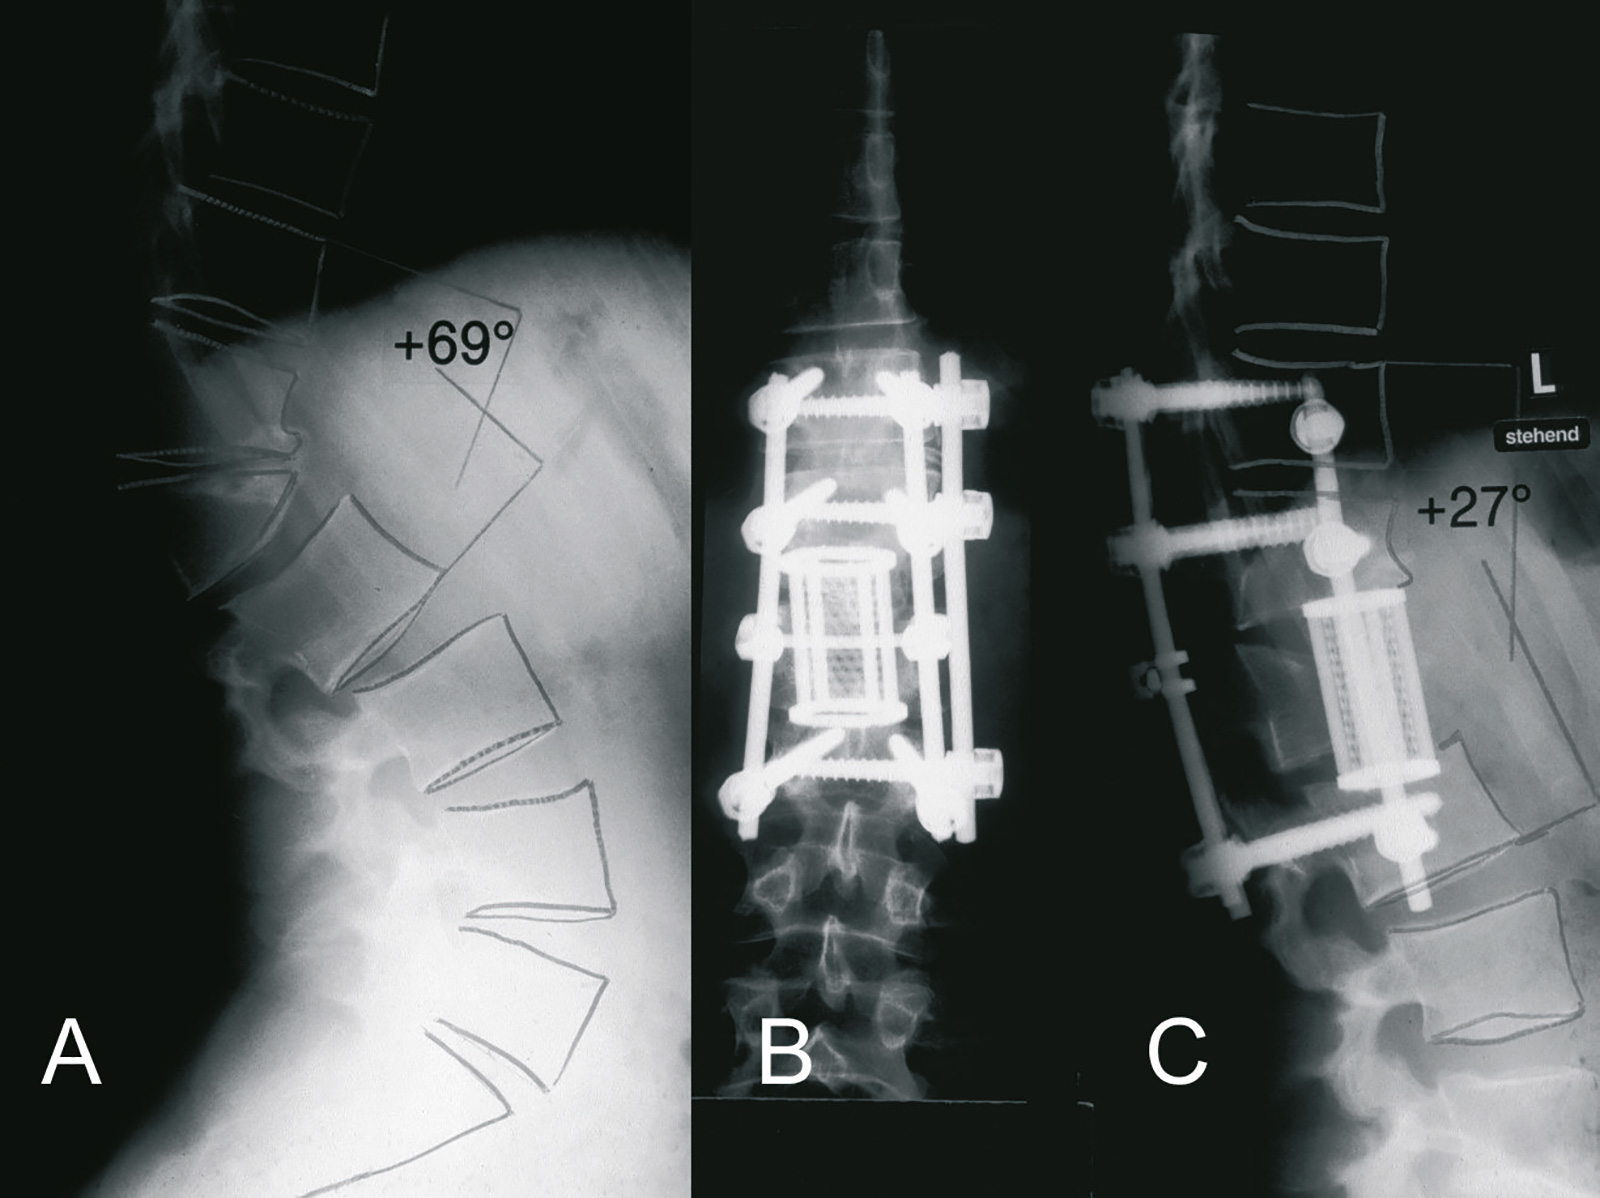 Abb. 3-9: LWK 1 Fraktur: Kombination aus dorsaler Spondylodese und ventraler Cageinterposition und Spongiosaplastik